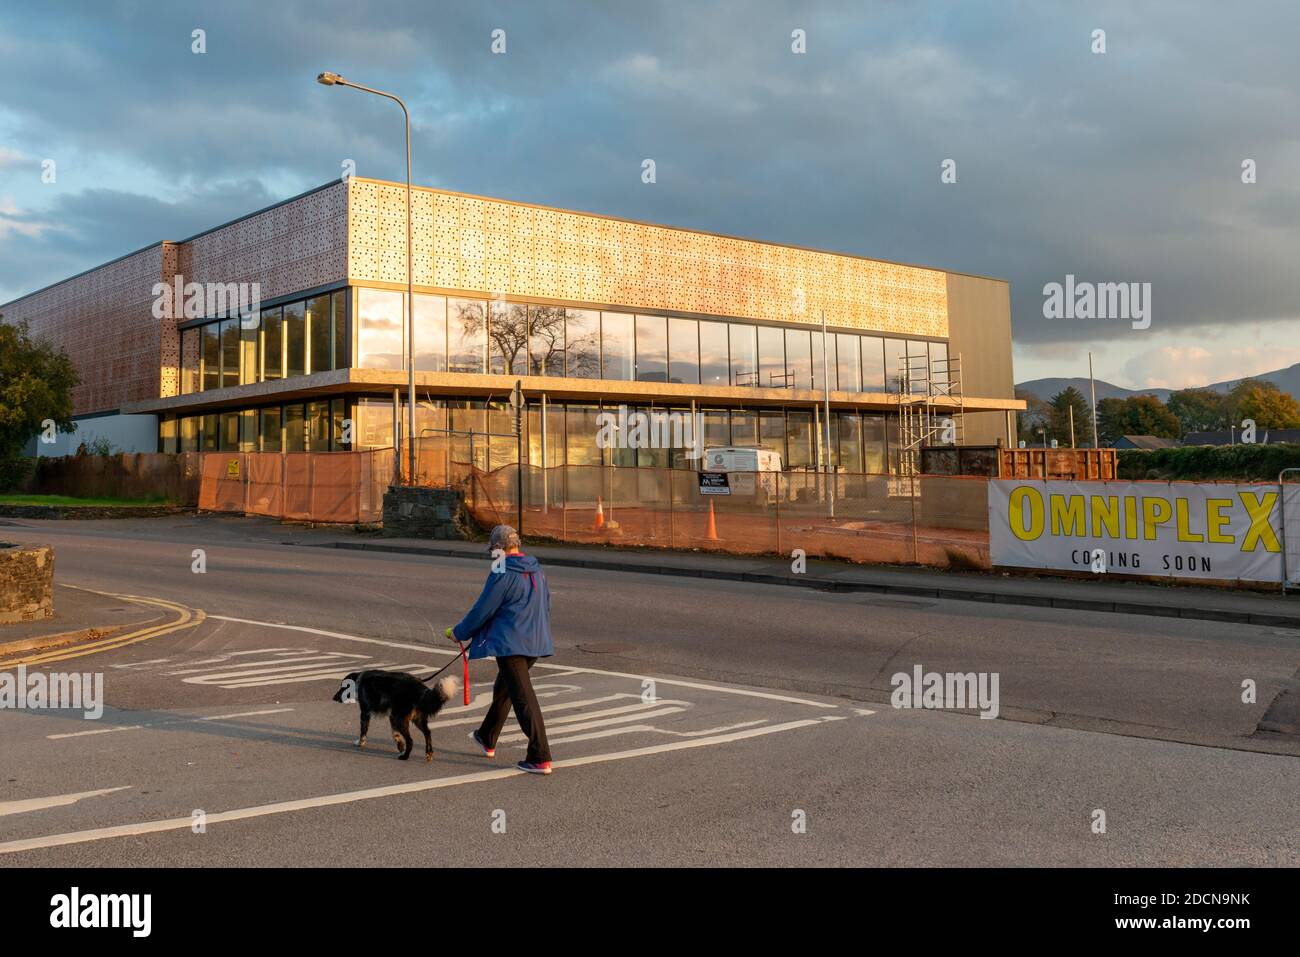 Omniplex Cinema Center Killarney, sito di costruzione e nuovo sviluppo di Griffin Brothers Contracting a Killarney, Irlanda, a partire da ottobre 2020 Foto Stock